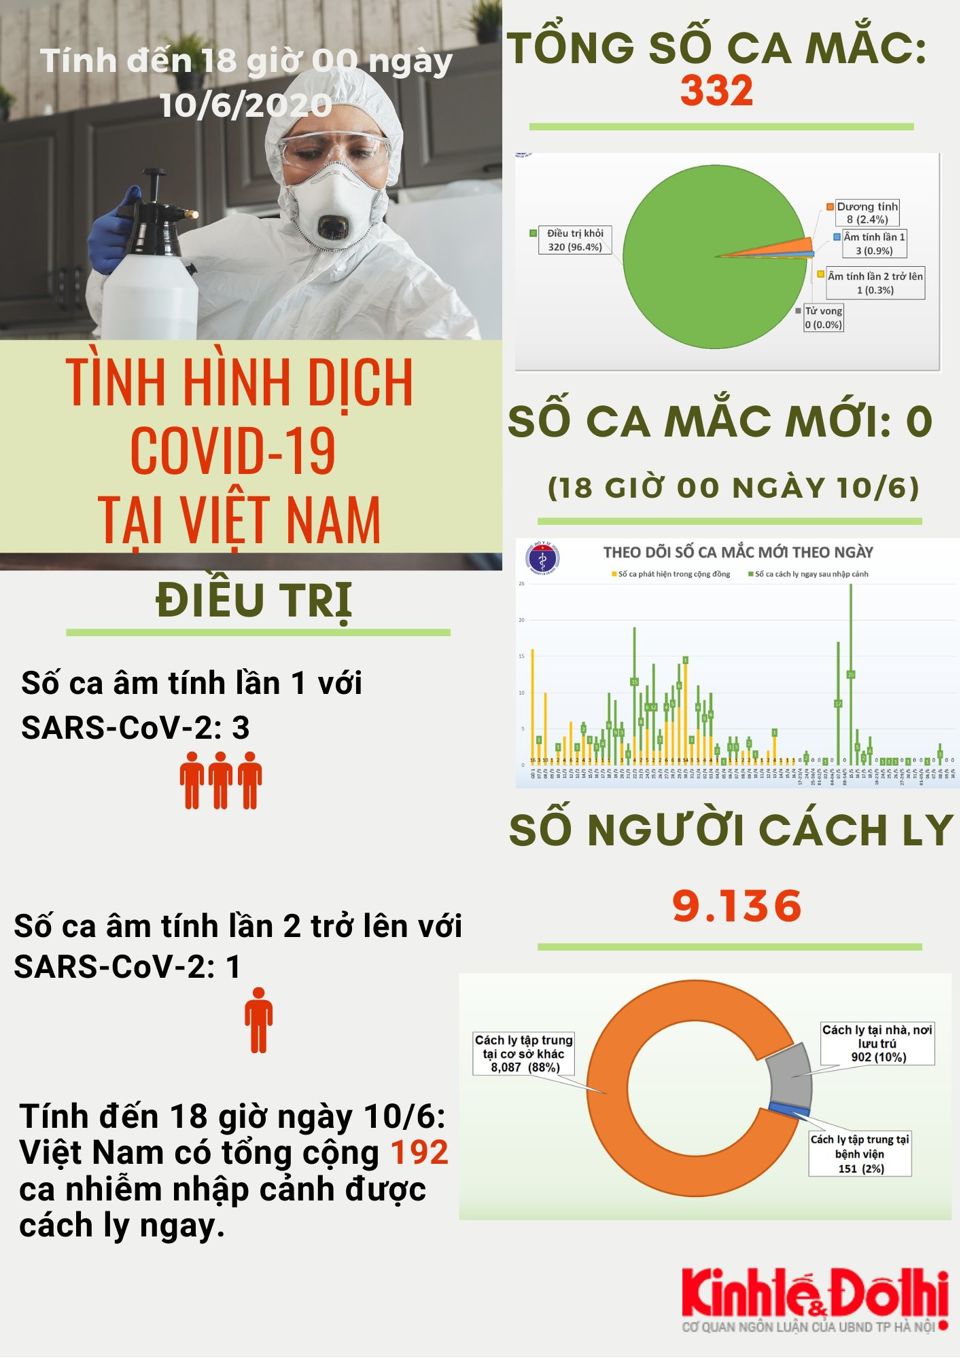 [Infographic] Việt Nam chỉ còn 8 bệnh nhân dương tính với virus Sars-CoV-2 - Ảnh 1